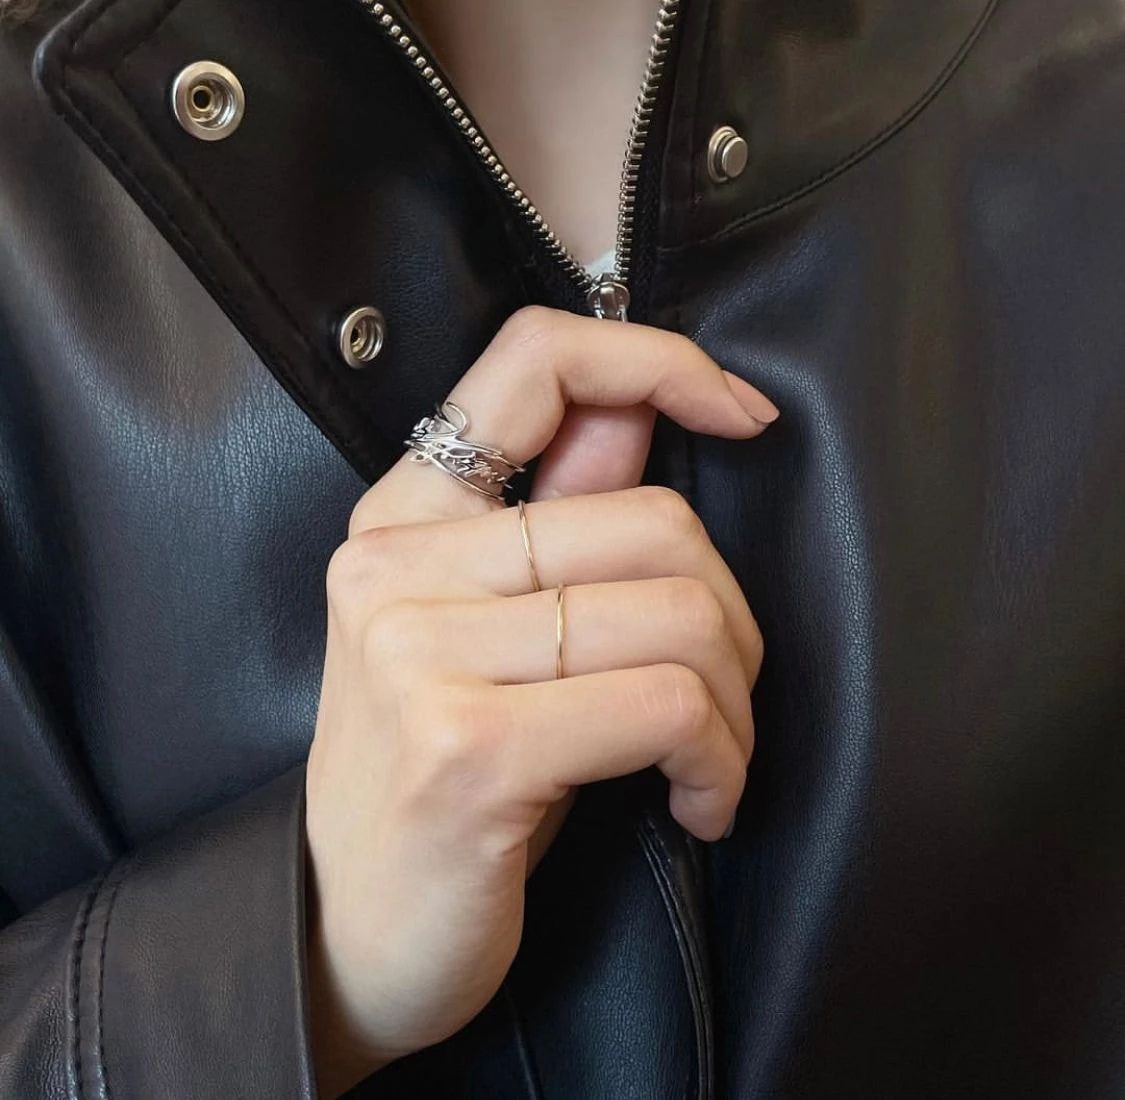 Новый мерч от SM Entertainment: кольца в виде подписей айдолов